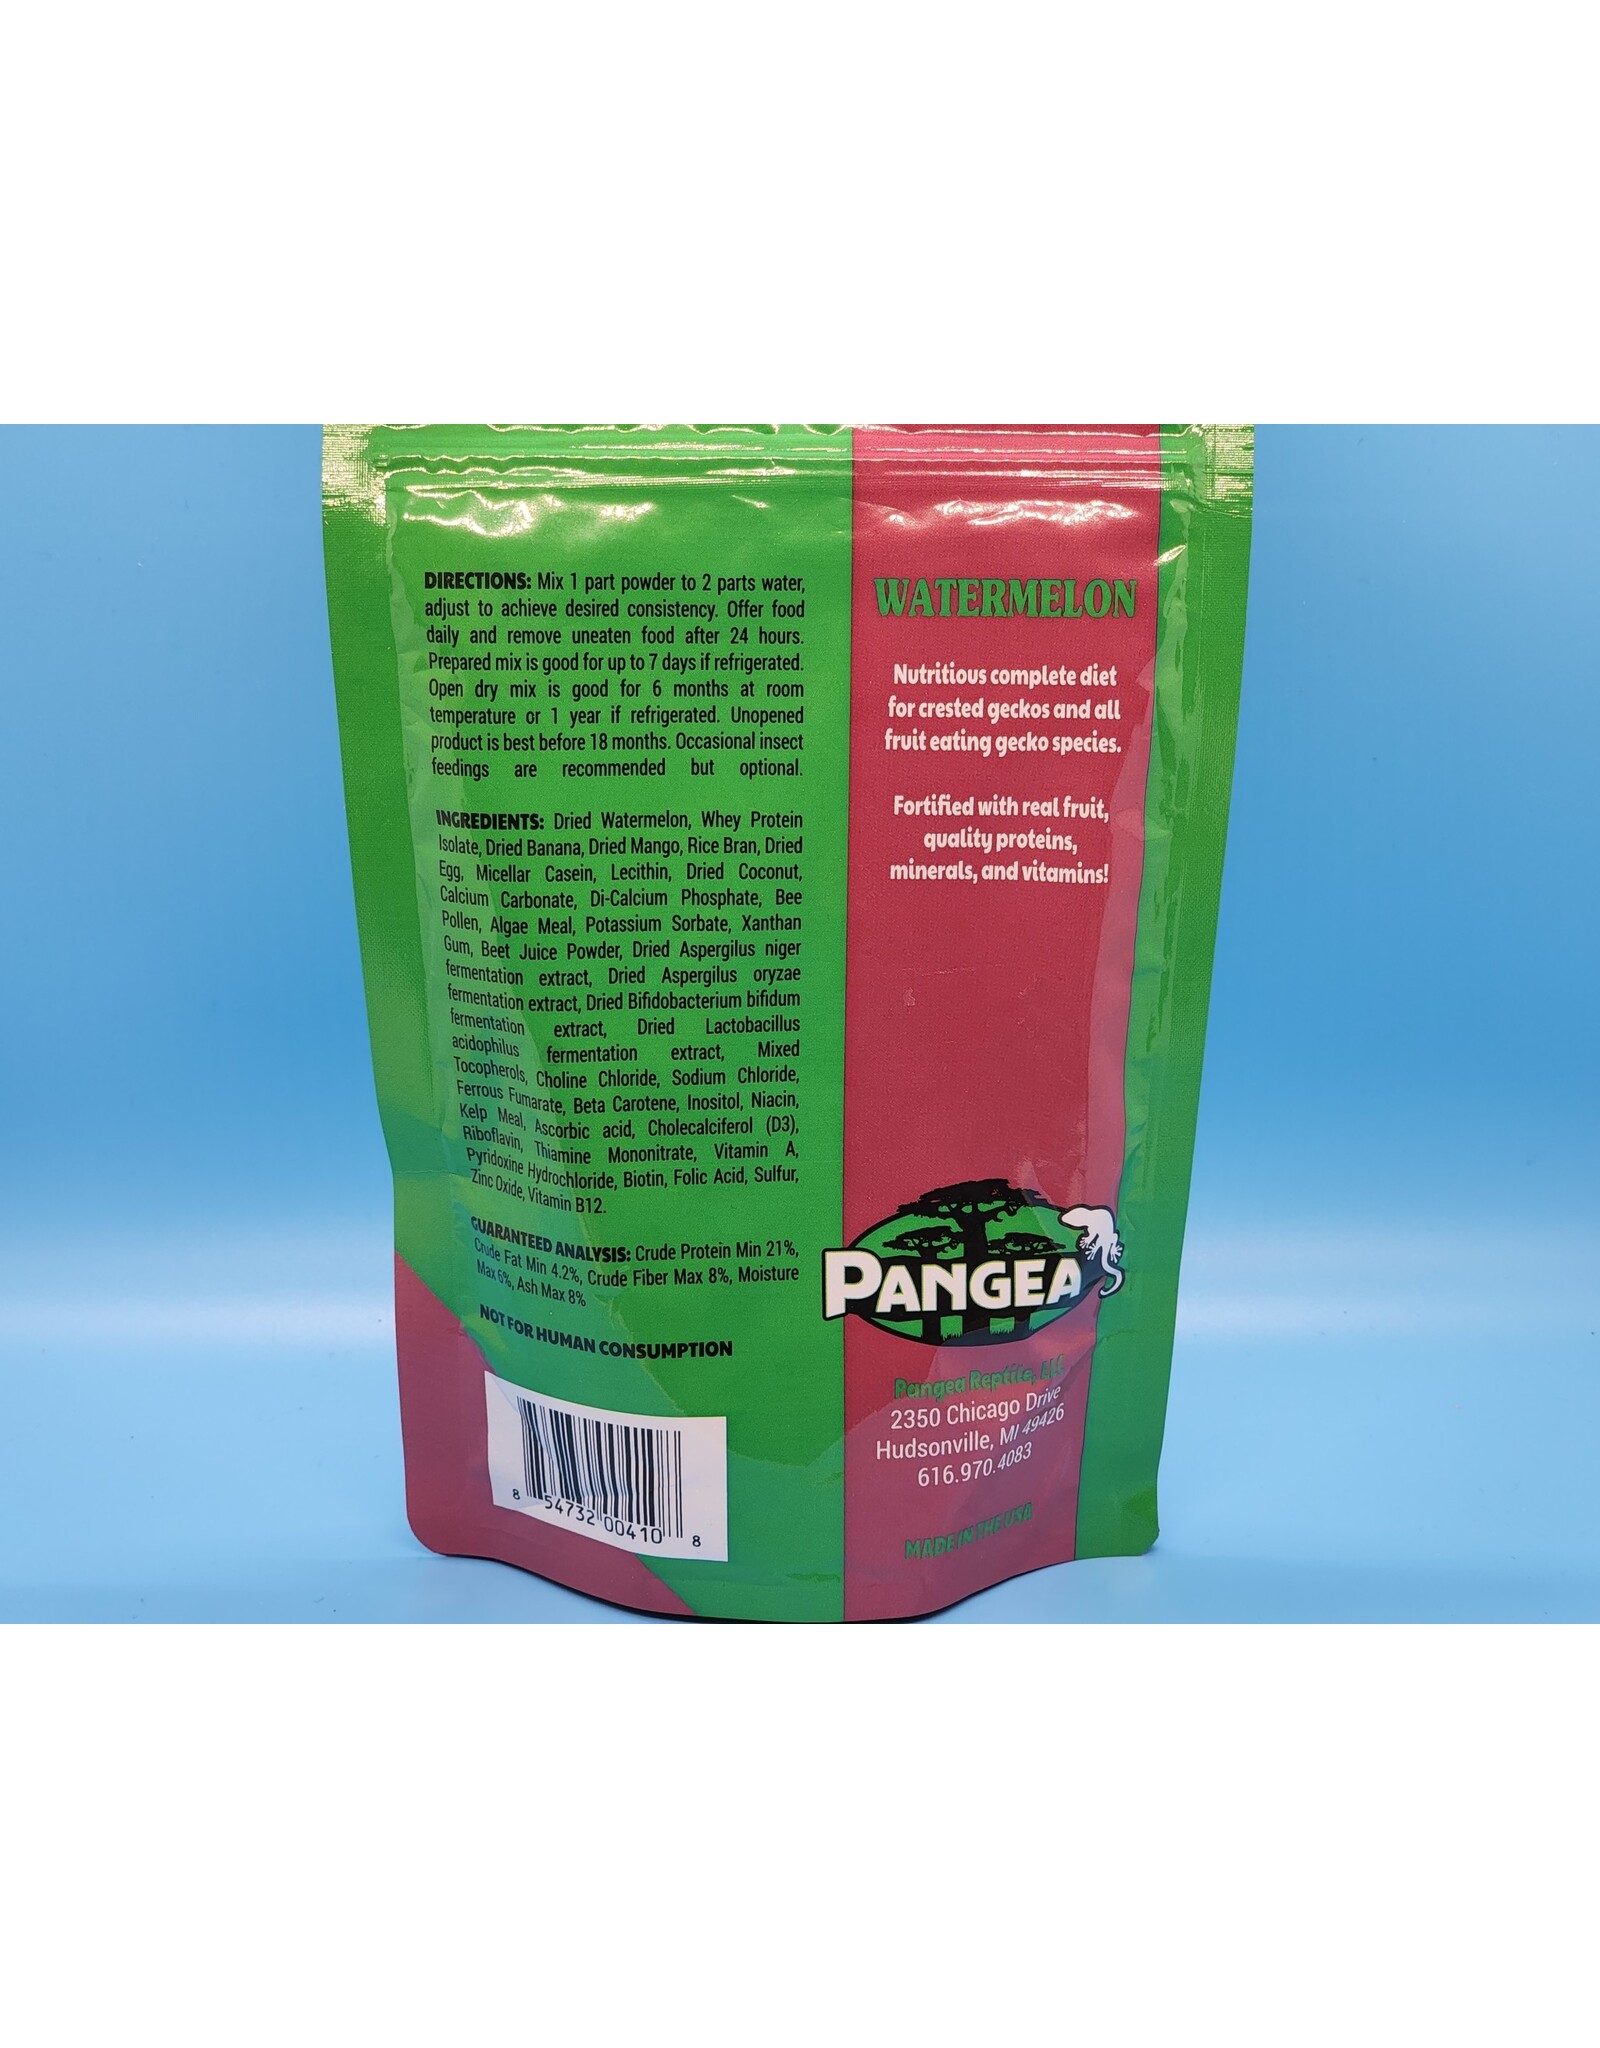 Pangea Pangea Gecko Diet Watermelon 8oz